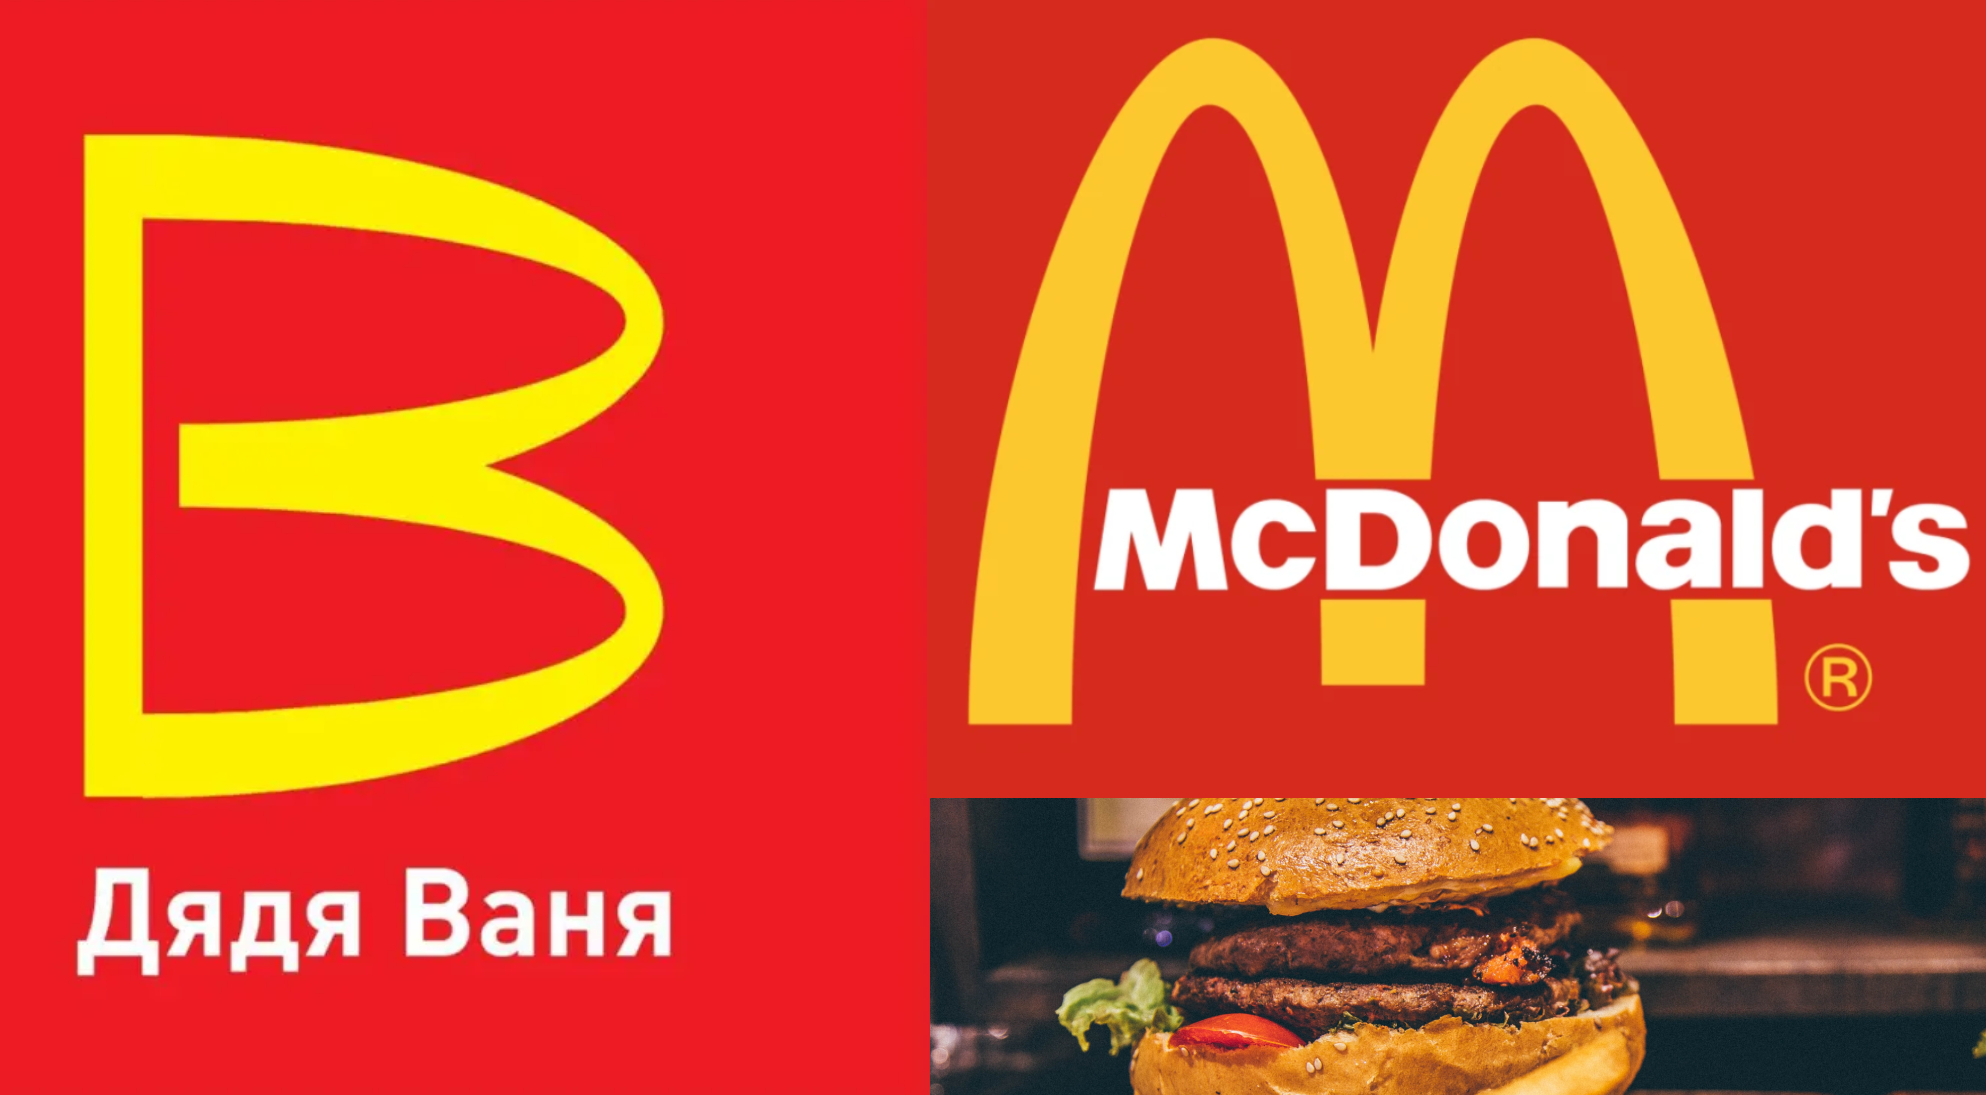 Ρωσία: Τα Uncle Vanya έρχονται να αντικαταστήσουν τα McDonald’s – 250 νέα εστιατόρια fast food θα ανοίξουν στη Μόσχα